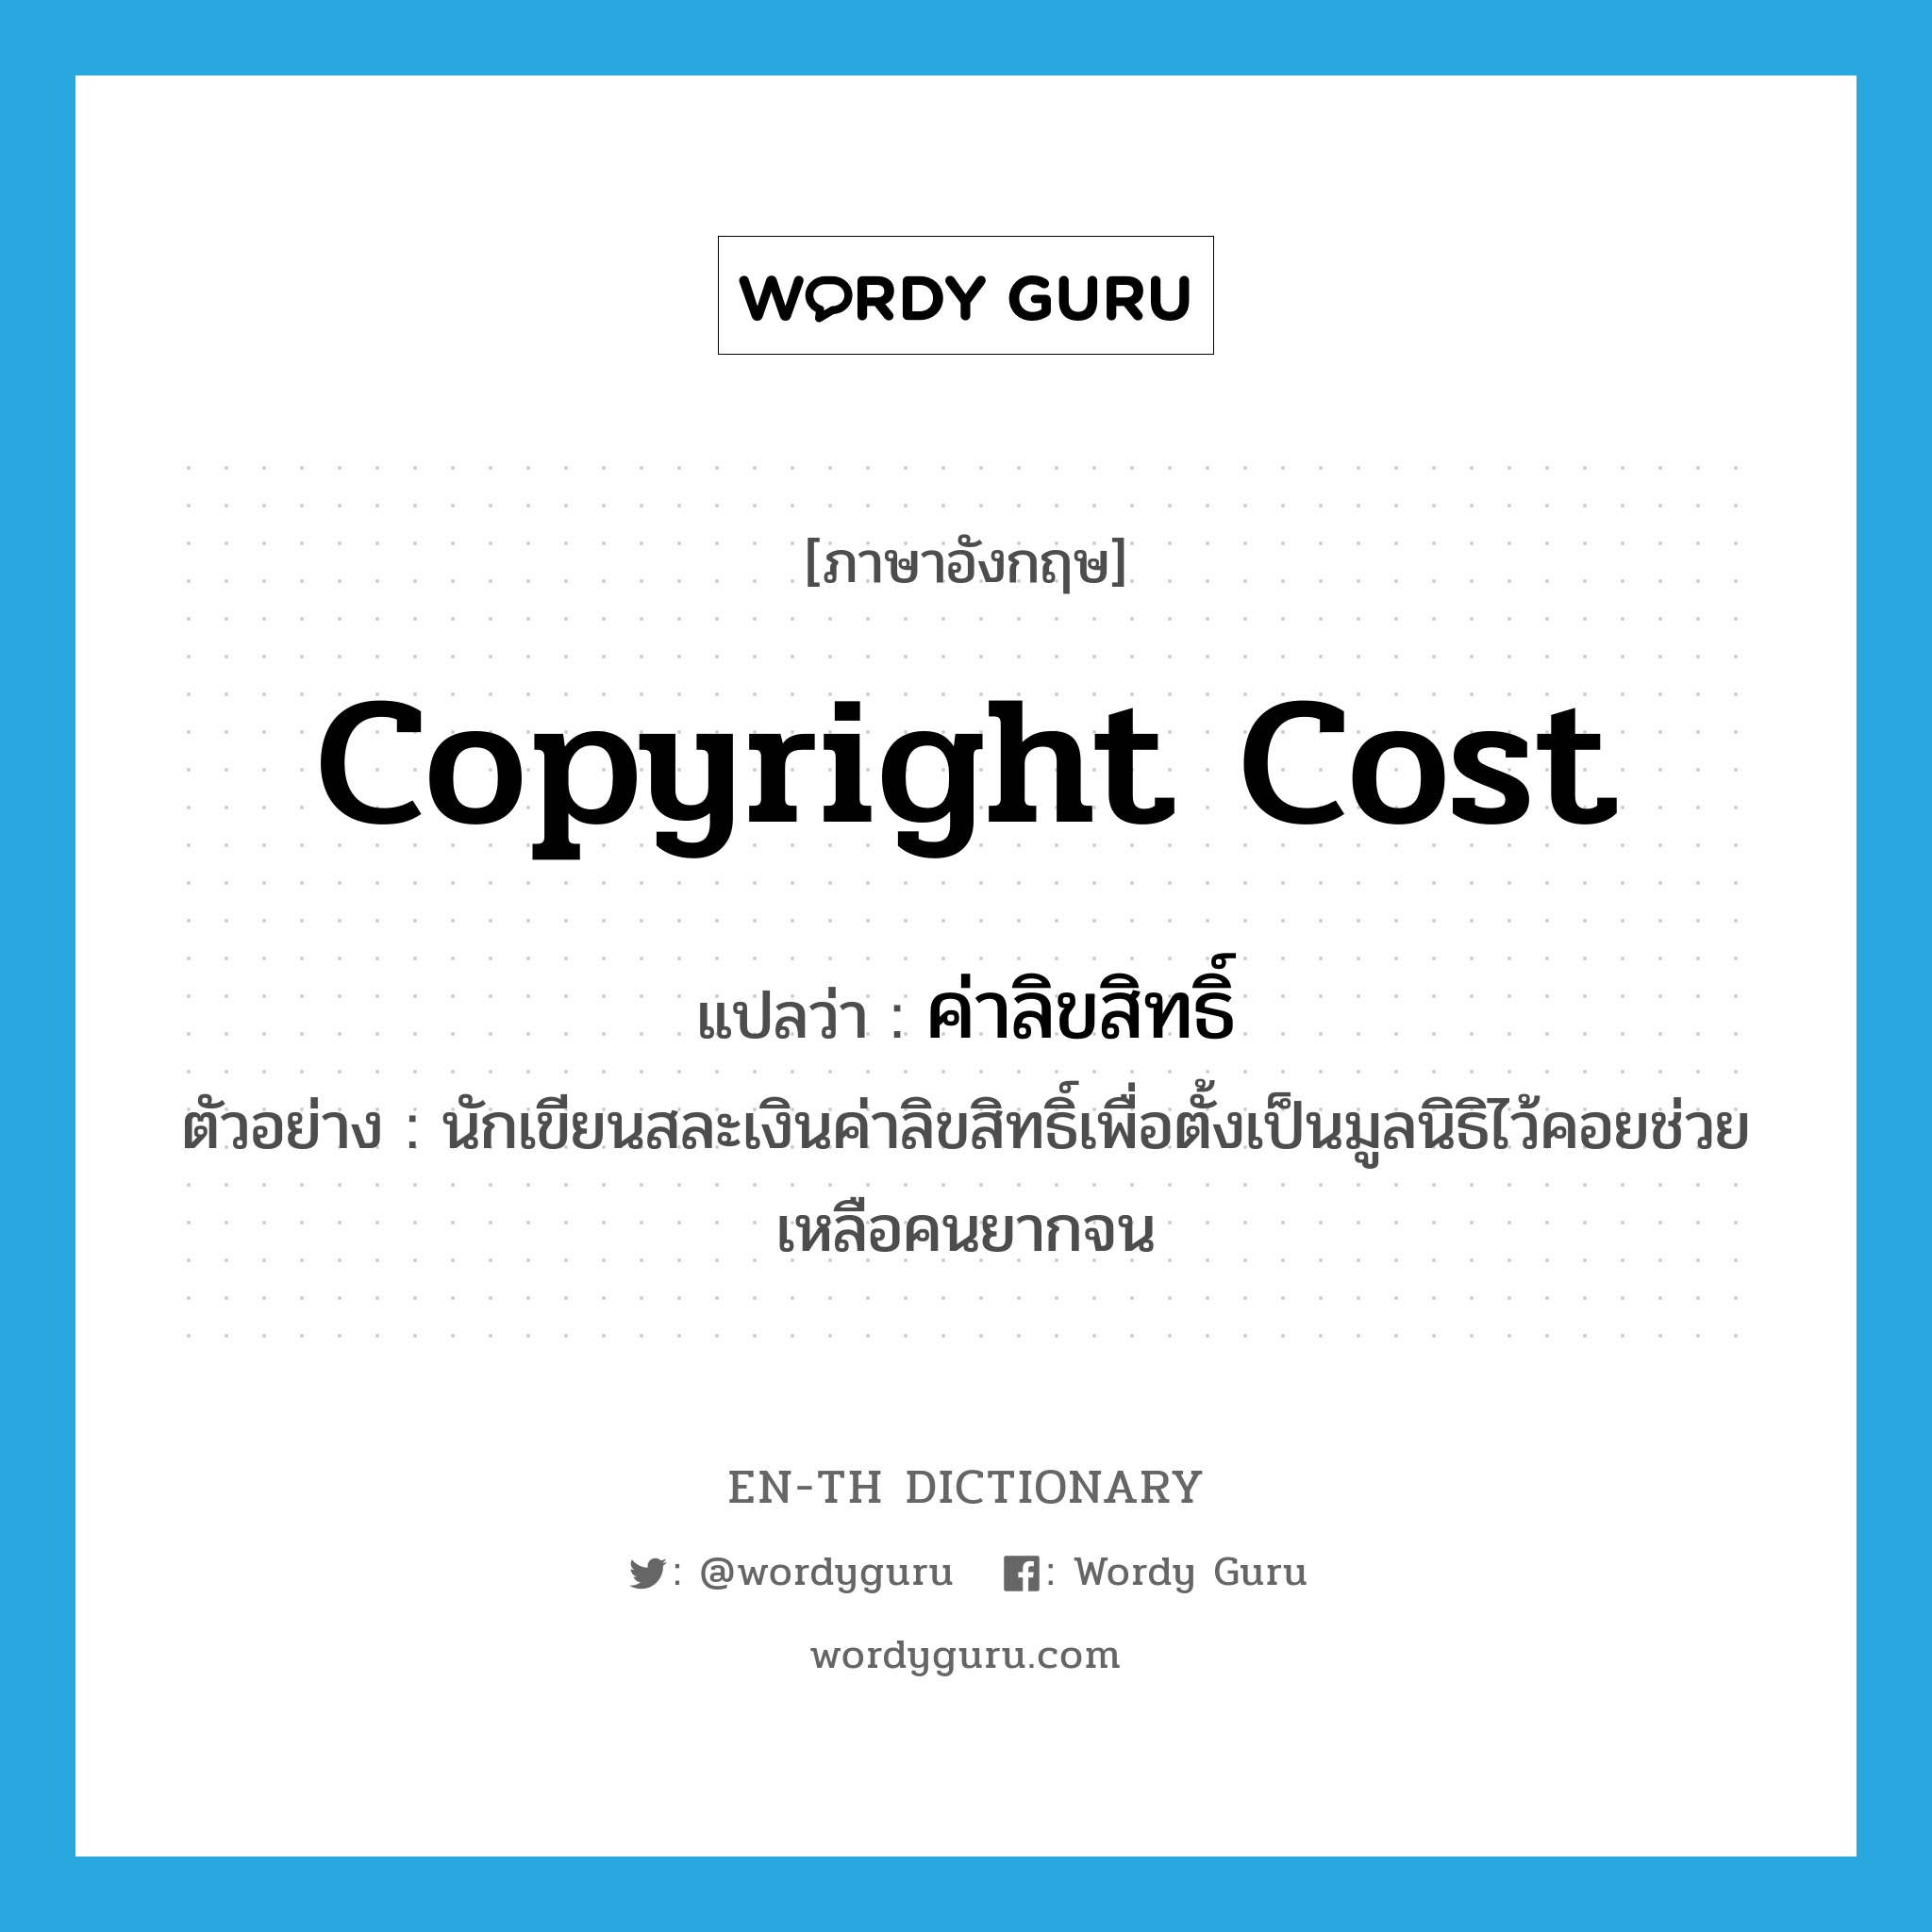 copyright cost แปลว่า?, คำศัพท์ภาษาอังกฤษ copyright cost แปลว่า ค่าลิขสิทธิ์ ประเภท N ตัวอย่าง นักเขียนสละเงินค่าลิขสิทธิ์เพื่อตั้งเป็นมูลนิธิไว้คอยช่วยเหลือคนยากจน หมวด N